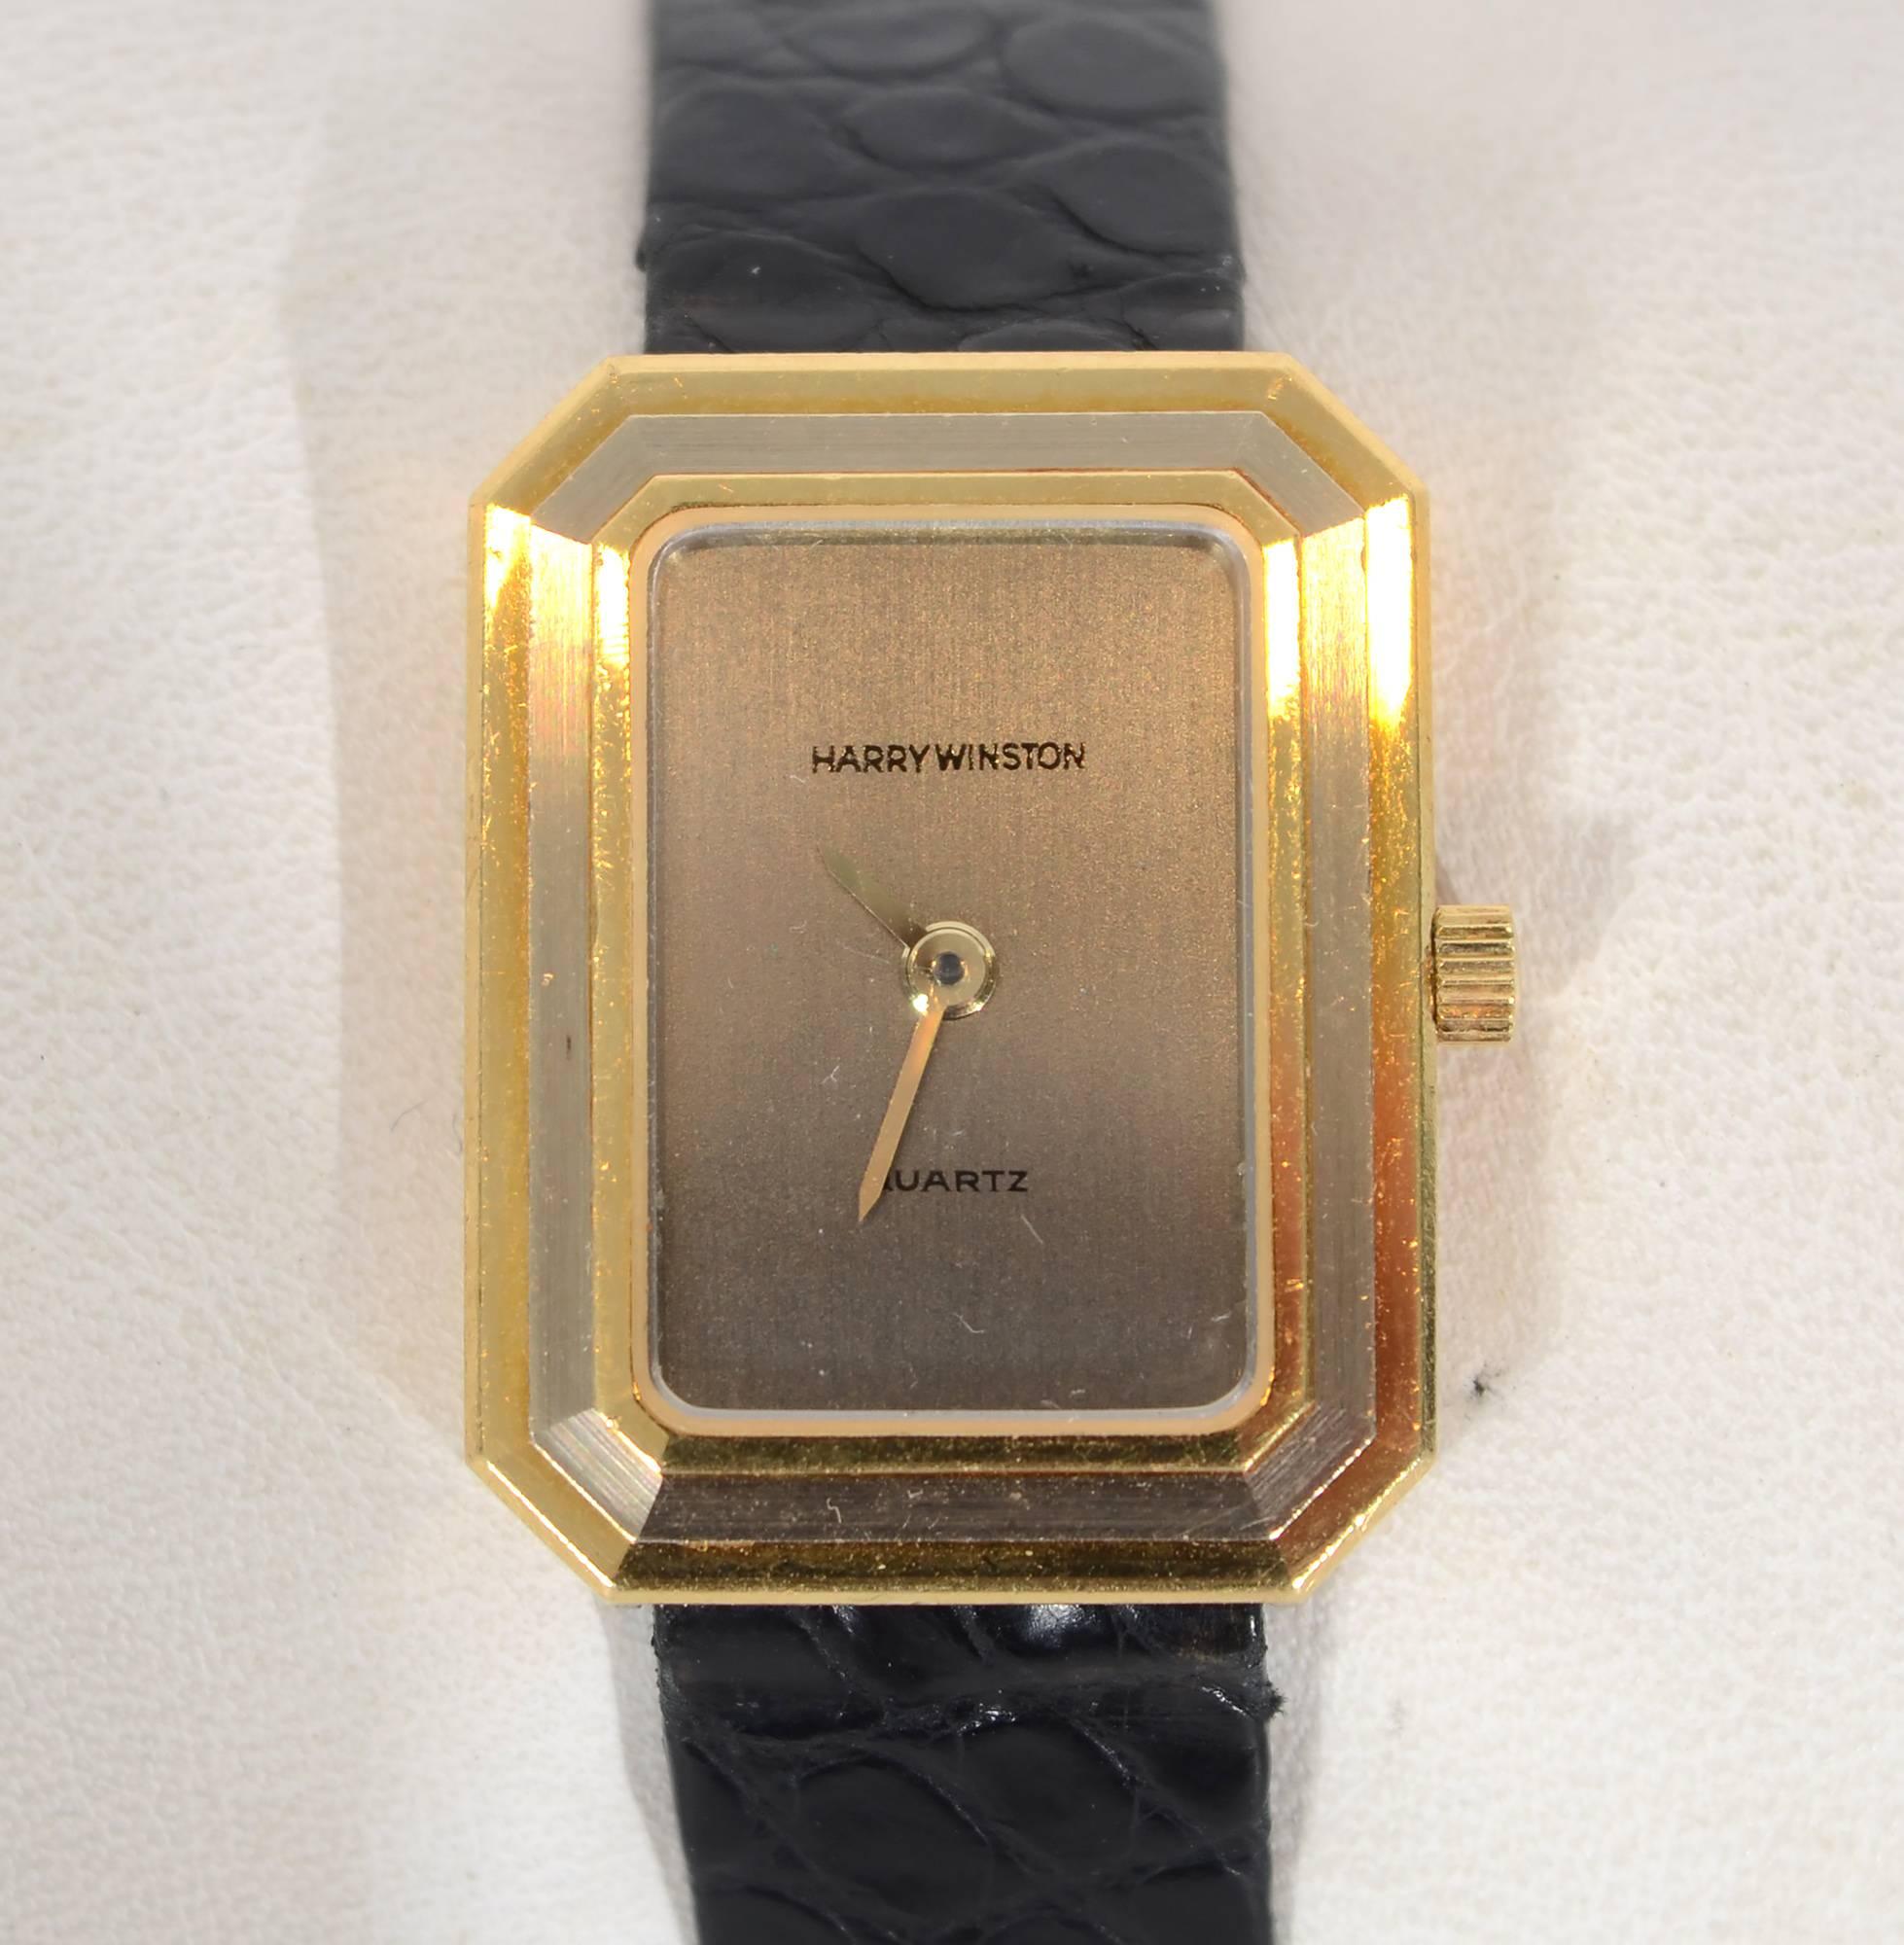 Harry Winston sportliche Tank-Armbanduhr aus Gelb- und Weißgold. Die äußeren und inneren Bänder aus Gelbgold umrahmen ein Band aus Weißgold. Das Zifferblatt ist silberfarben mit goldenen Zeigern. Das Uhrwerk ist ein Quarzwerk. Das Armband ist das